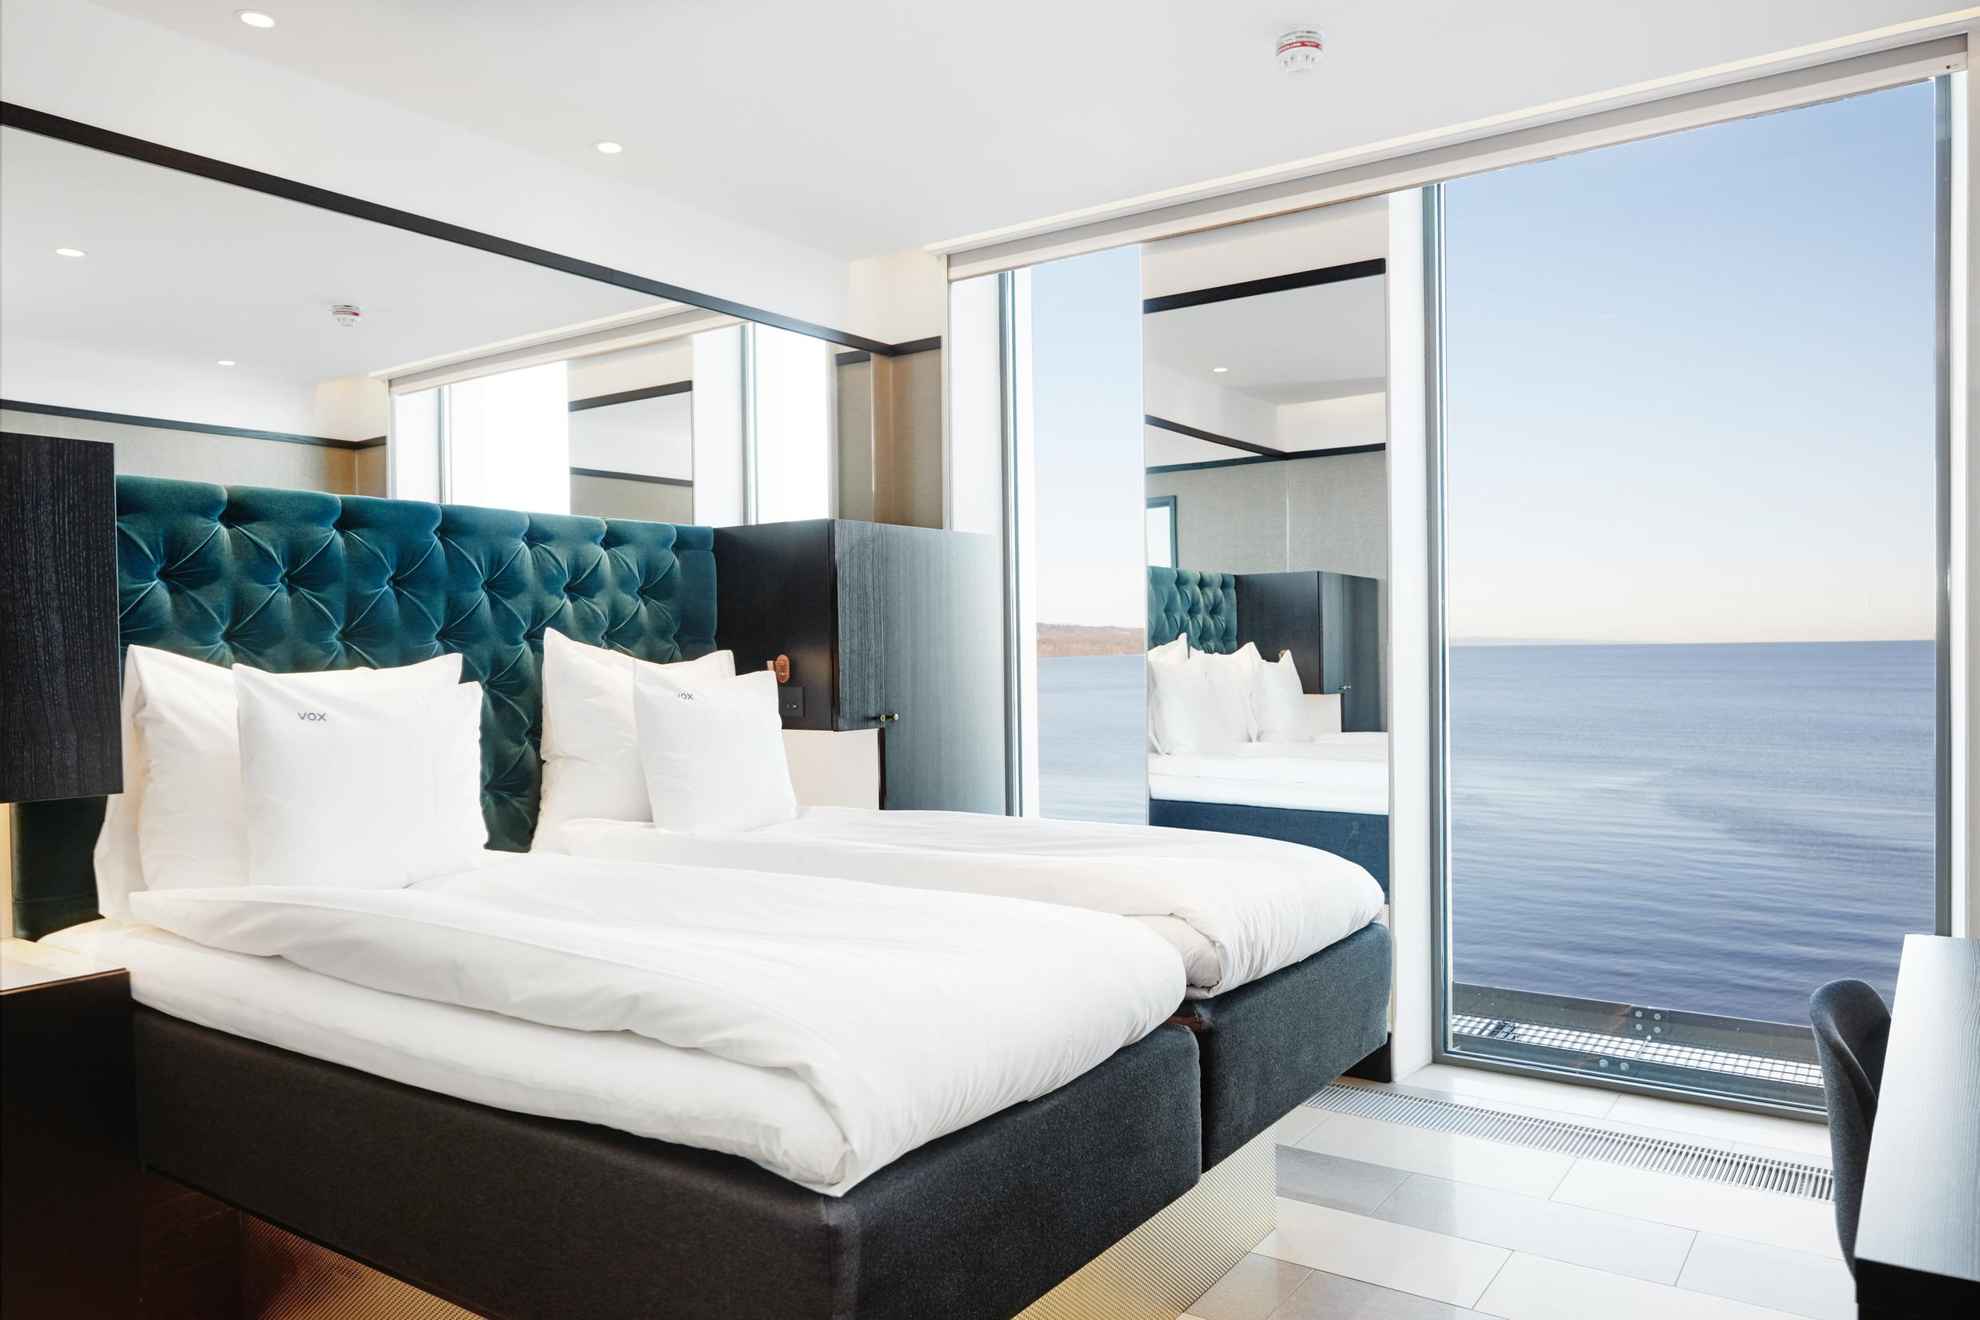 Une chambre d'hôtel avec un lit double et des draps blancs. La chambre possède de grandes ouvertures qui donnent sur le lac Vättern.